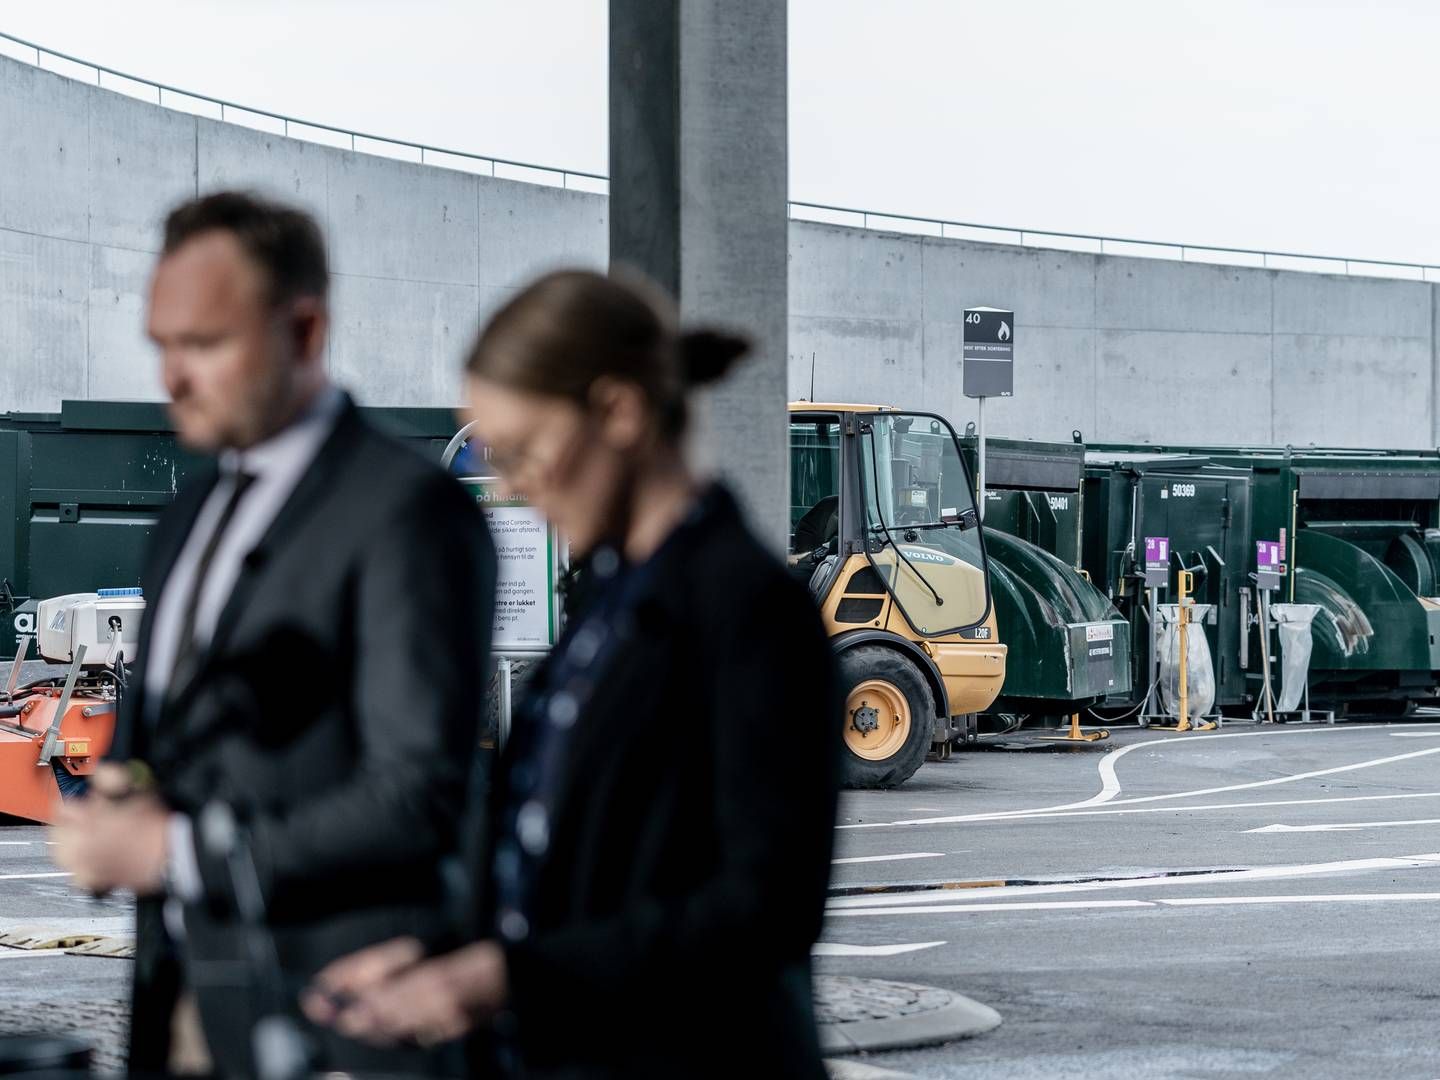 Miljøminister Lea Wermelin (S) og klima- energi- og forsyningsminister Dan Jørgensen (S) præsenterede mandag d. 18 maj regeringens bud på en mere grøn affaldssektor med langt mindre CO2-udledning. | Foto: Aleksander Klug